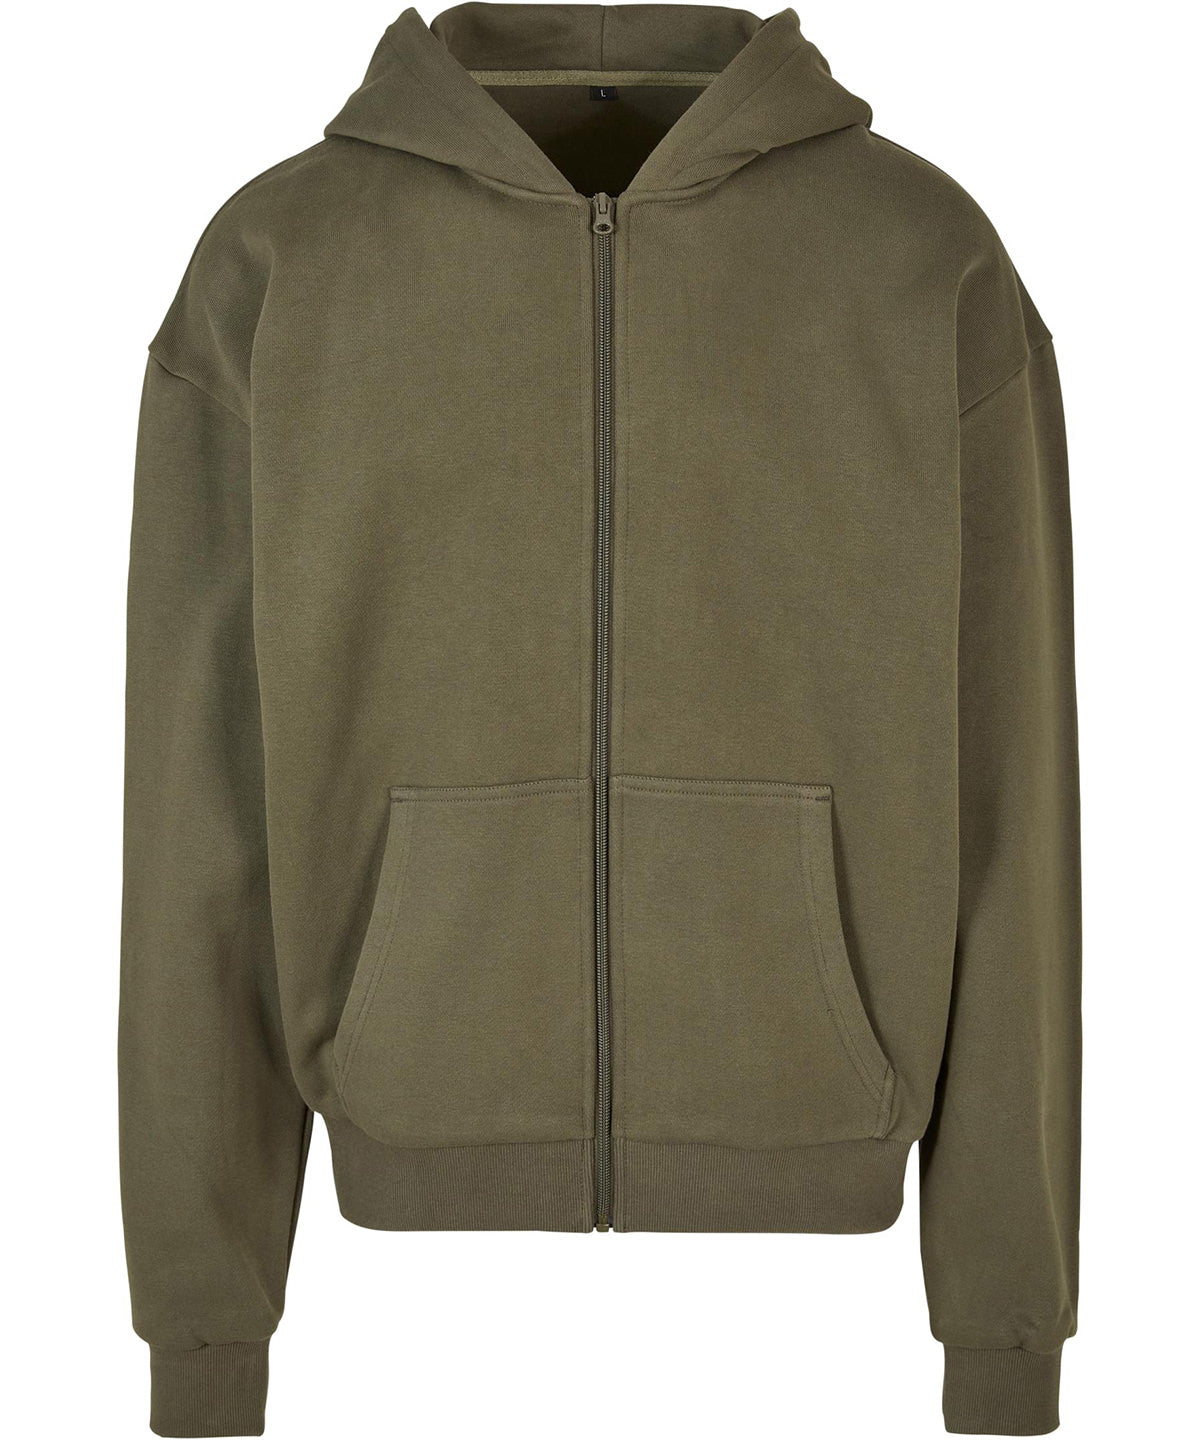 Personalised Hoodies - Black Build Your Brand Ultra heavy zip hoodie